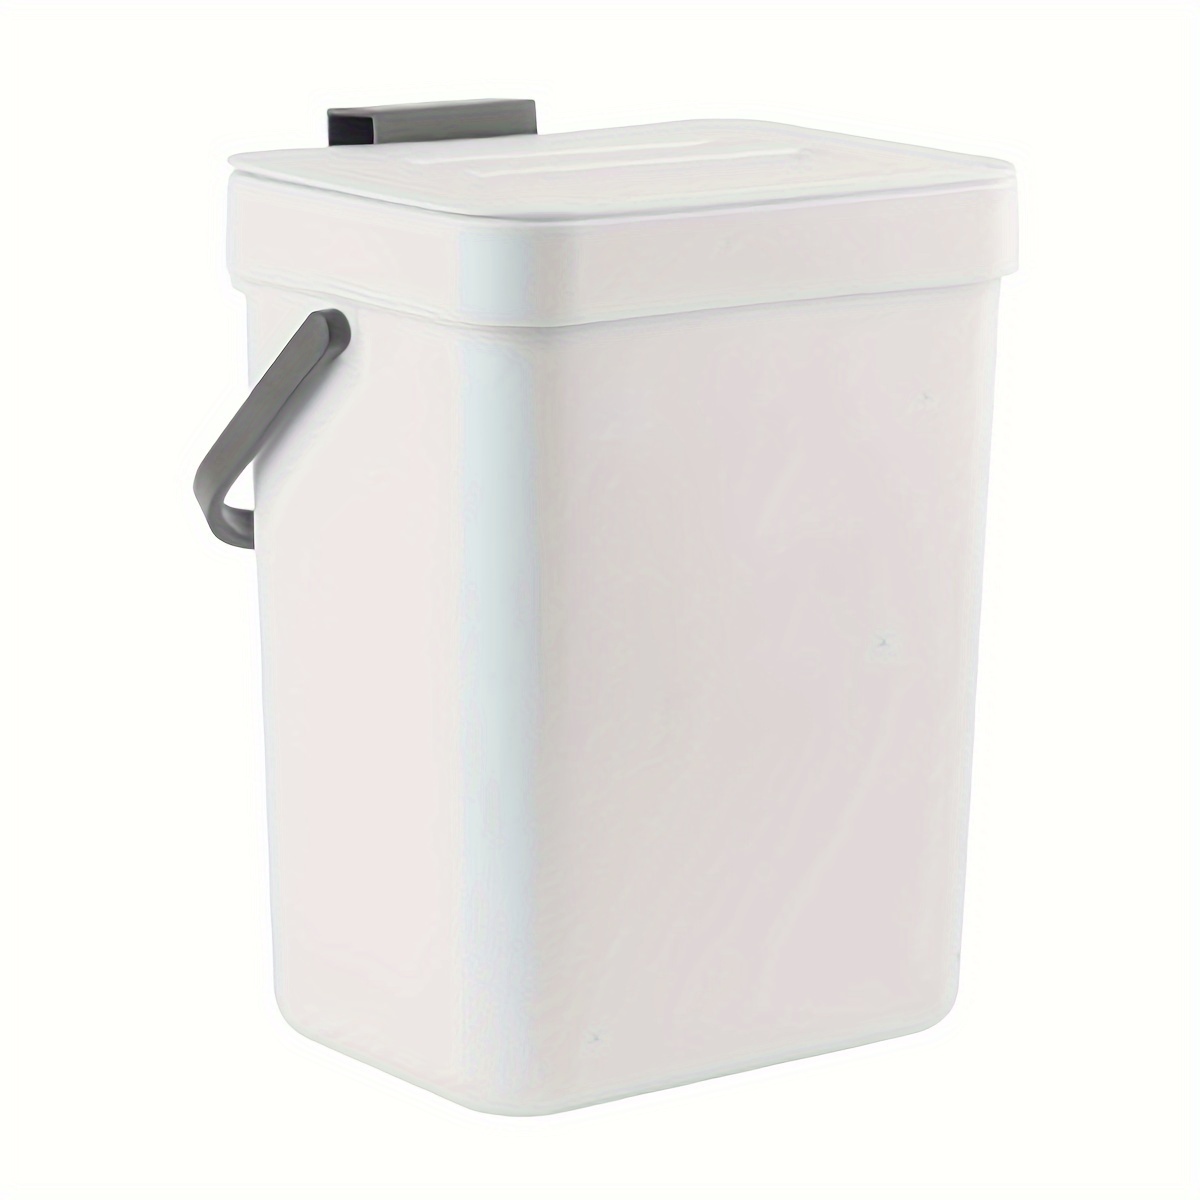  Cubo de basura de acero inoxidable con tapa, cubo de basura  cuadrado de inducción para cocina, papelera inteligente para el hogar,  carga y batería de doble uso (no incluye batería), contenedores